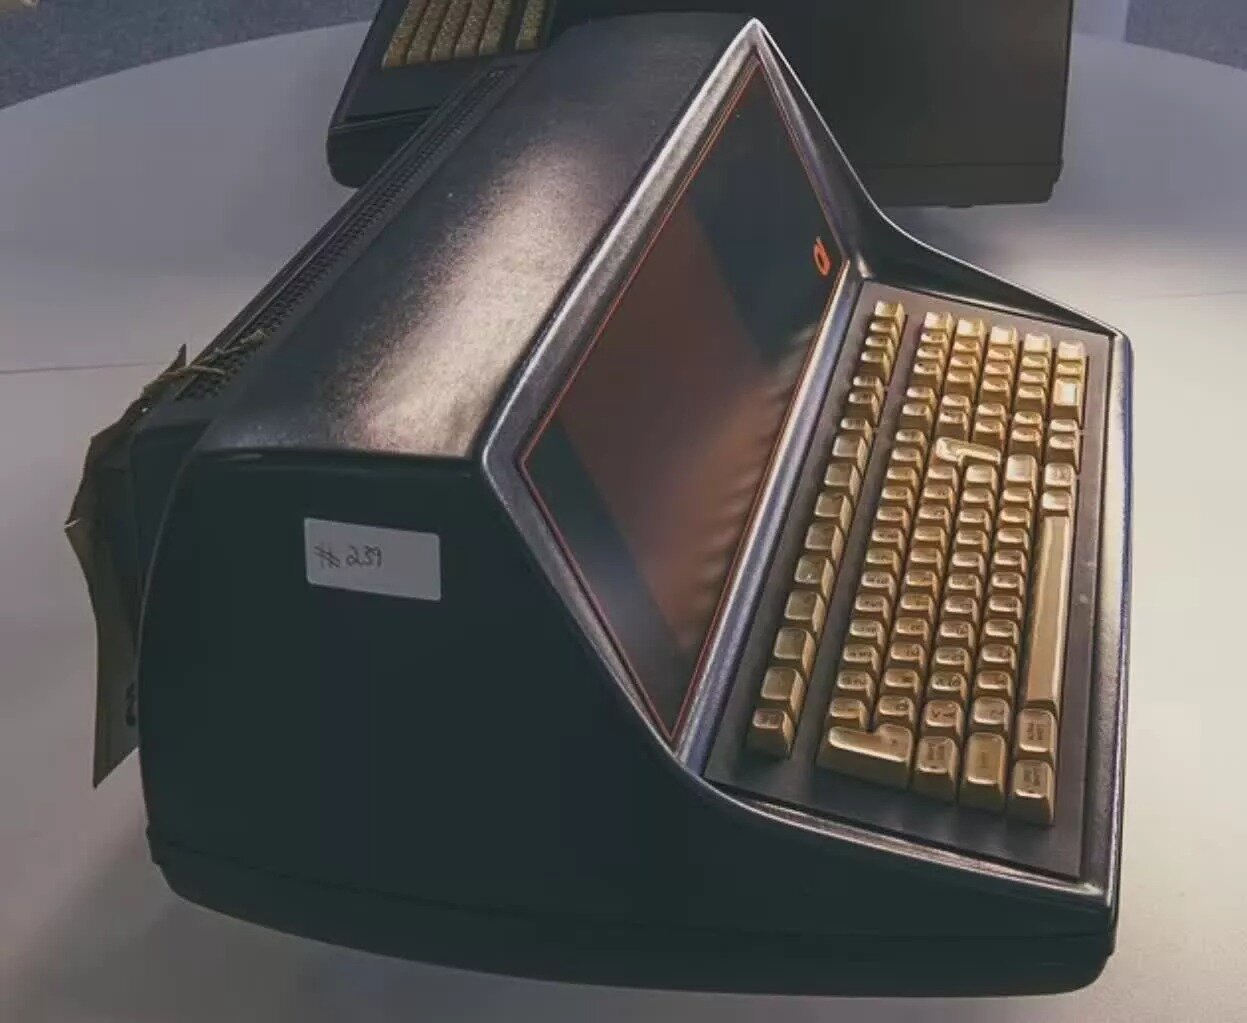 Περισσότερες πληροφορίες για "Δύο από τους πρώτους επιτραπέζιους υπολογιστές στον κόσμο ανακαλύφθηκαν στη διάρκεια καθαρισμού σπιτιού"